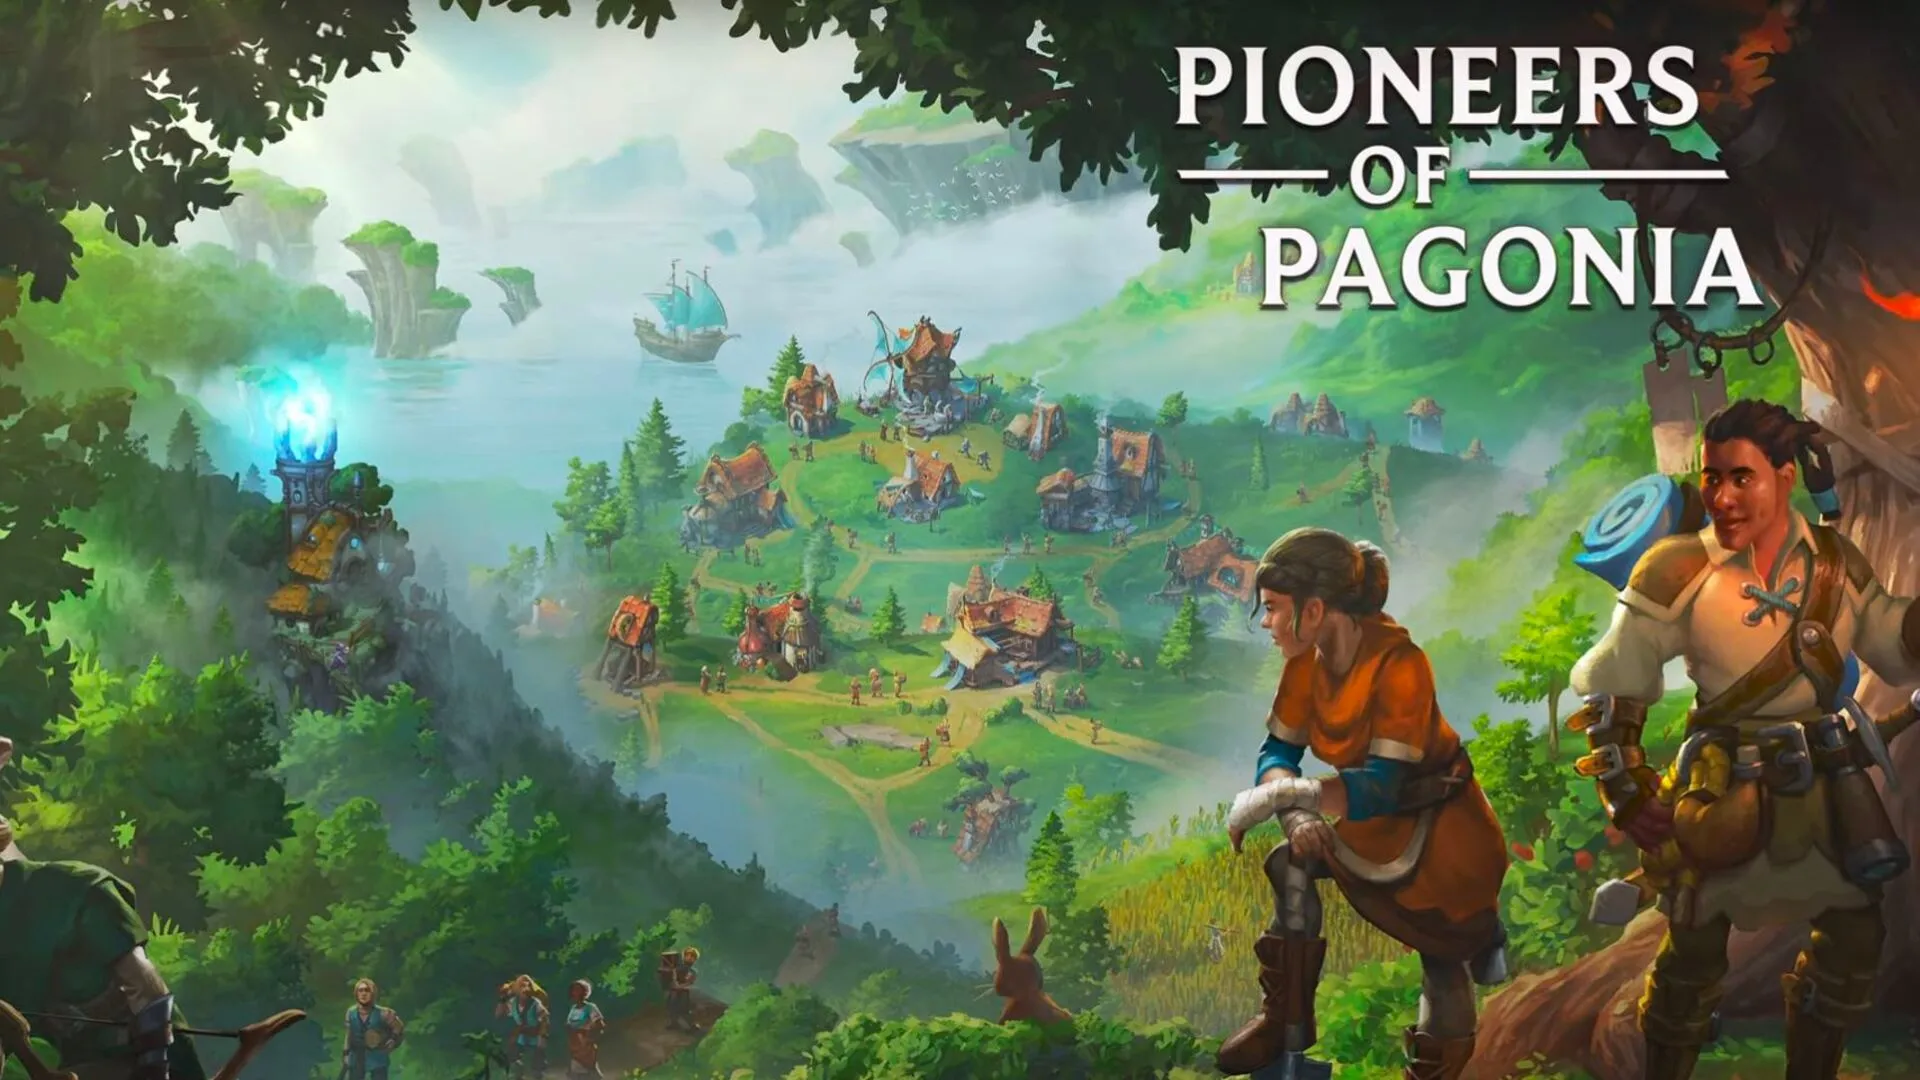 Pioneers of Pagonia - wrażenia z wczesnego dostępu do gry. W końcu budowanie wioski daje frajdę